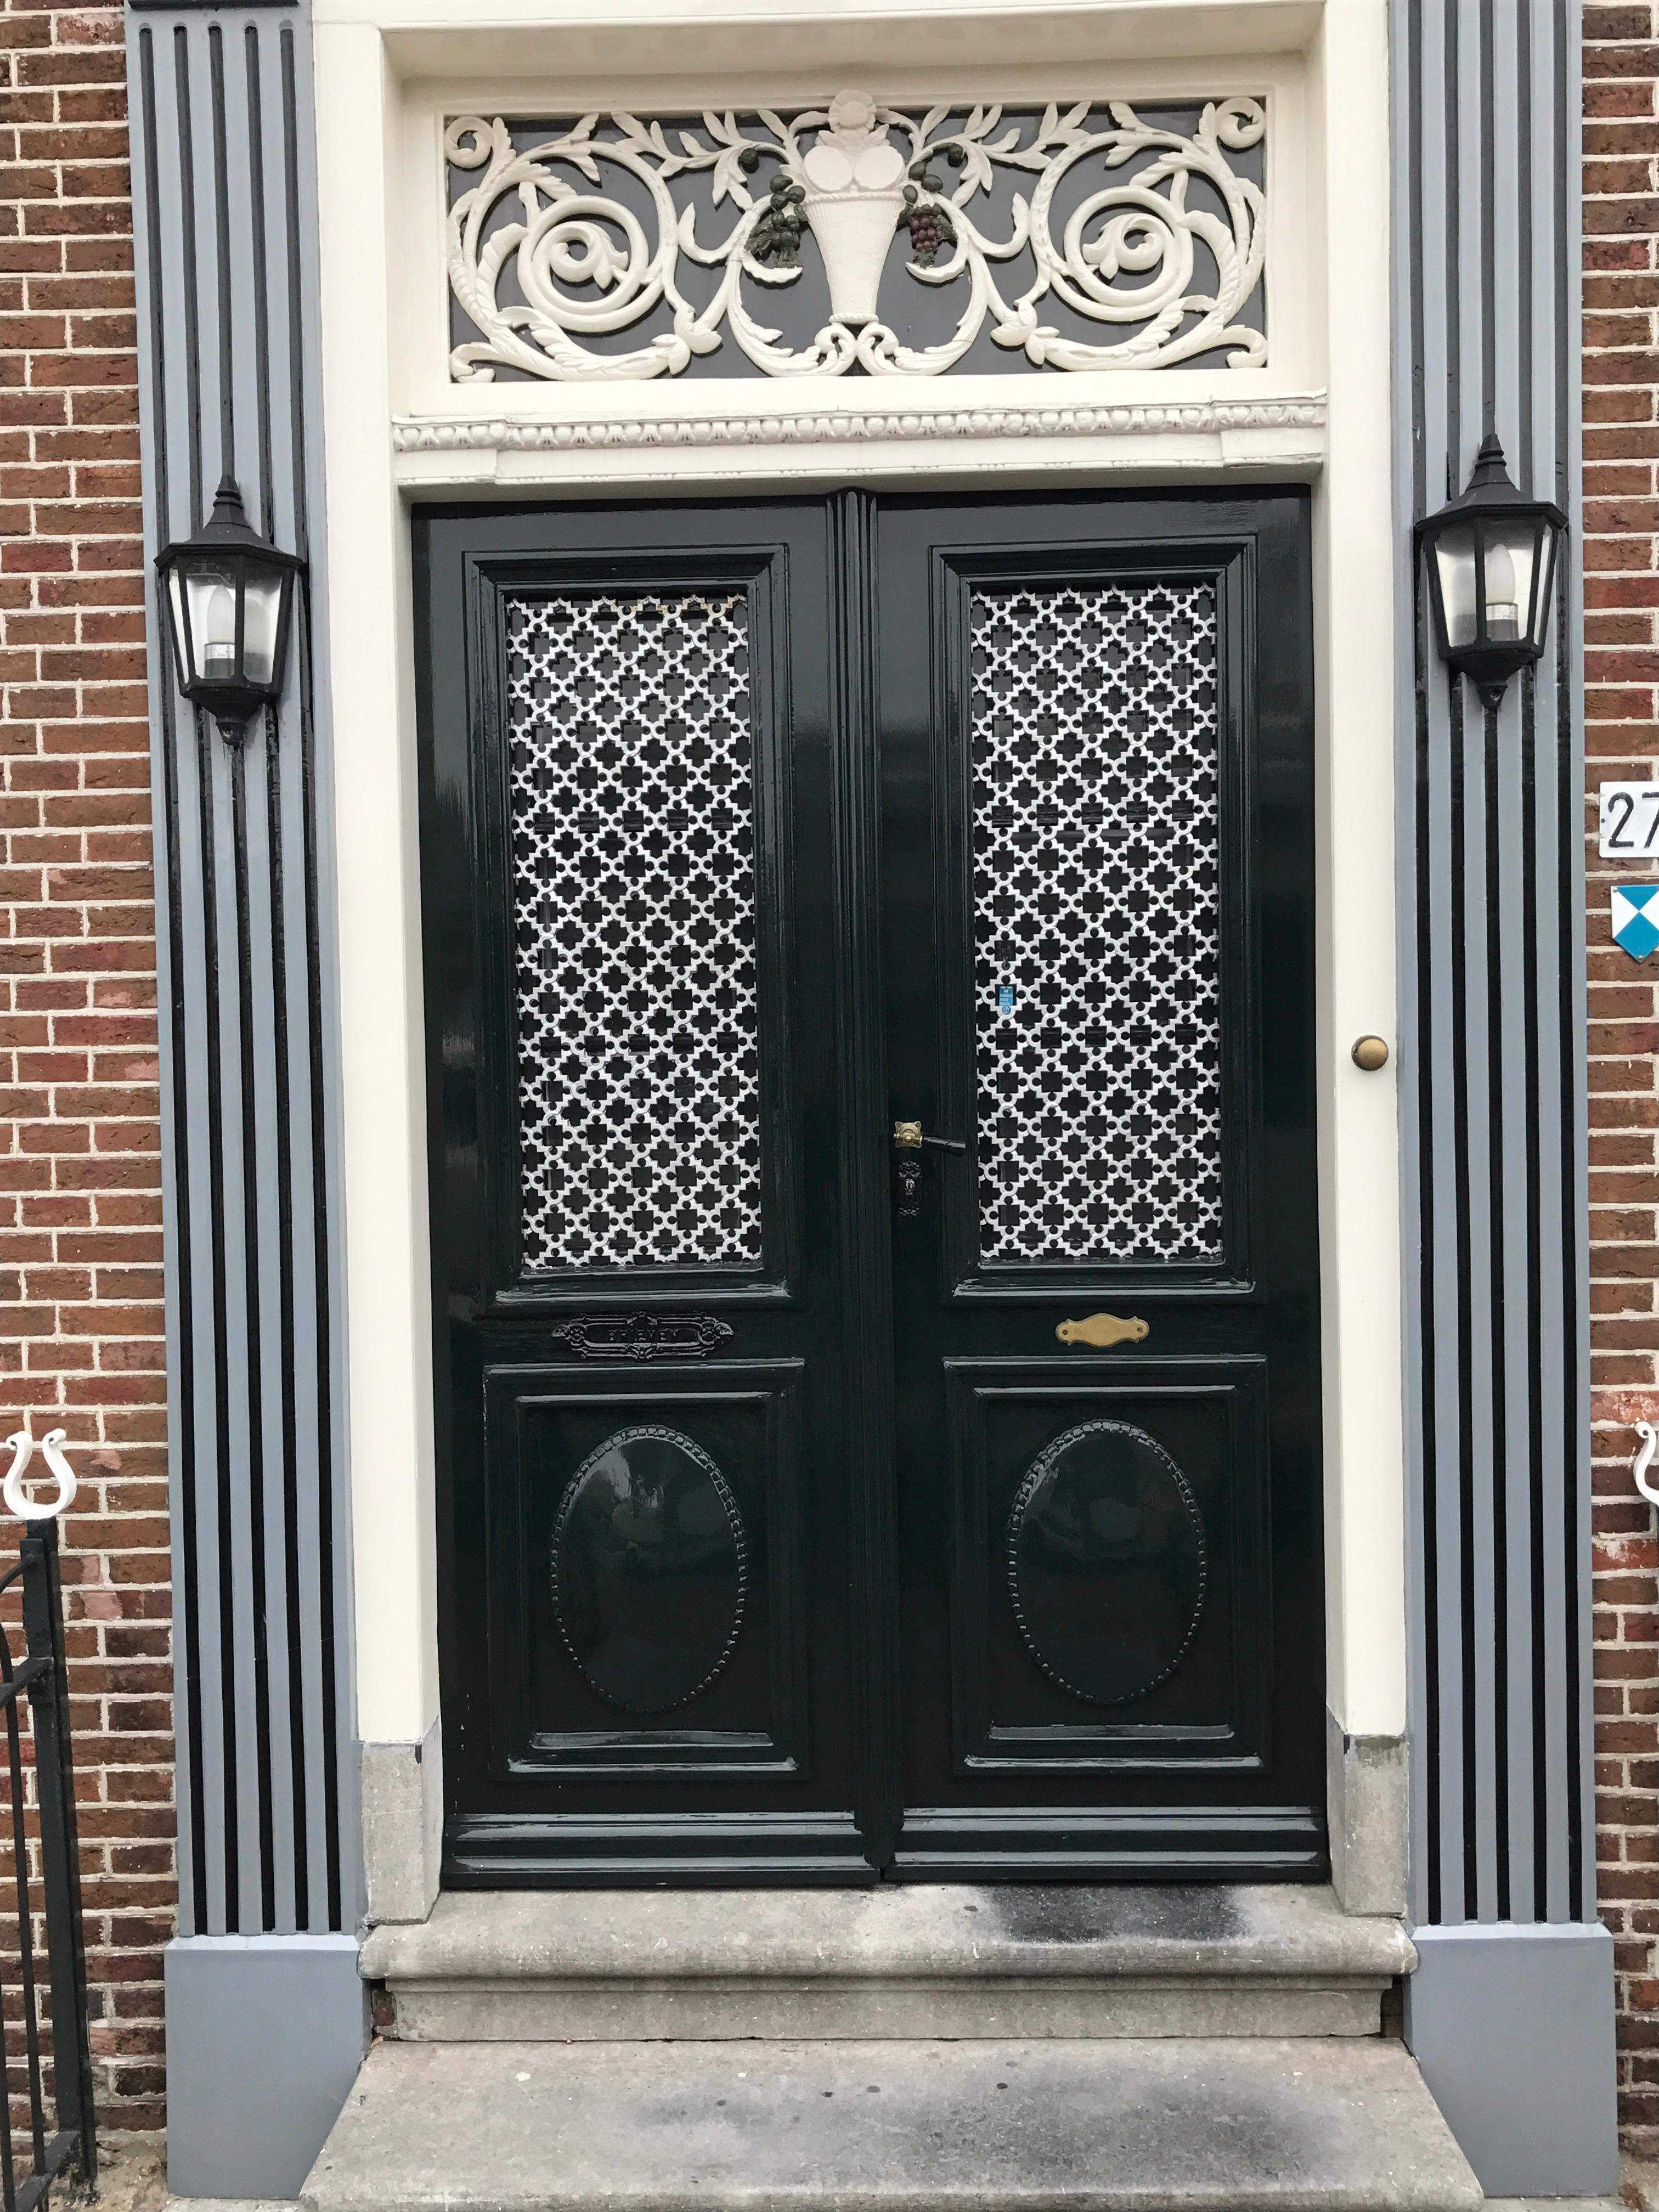 Typische #Haustür in den Niederlanden #architektur #liebezumdetail #doors